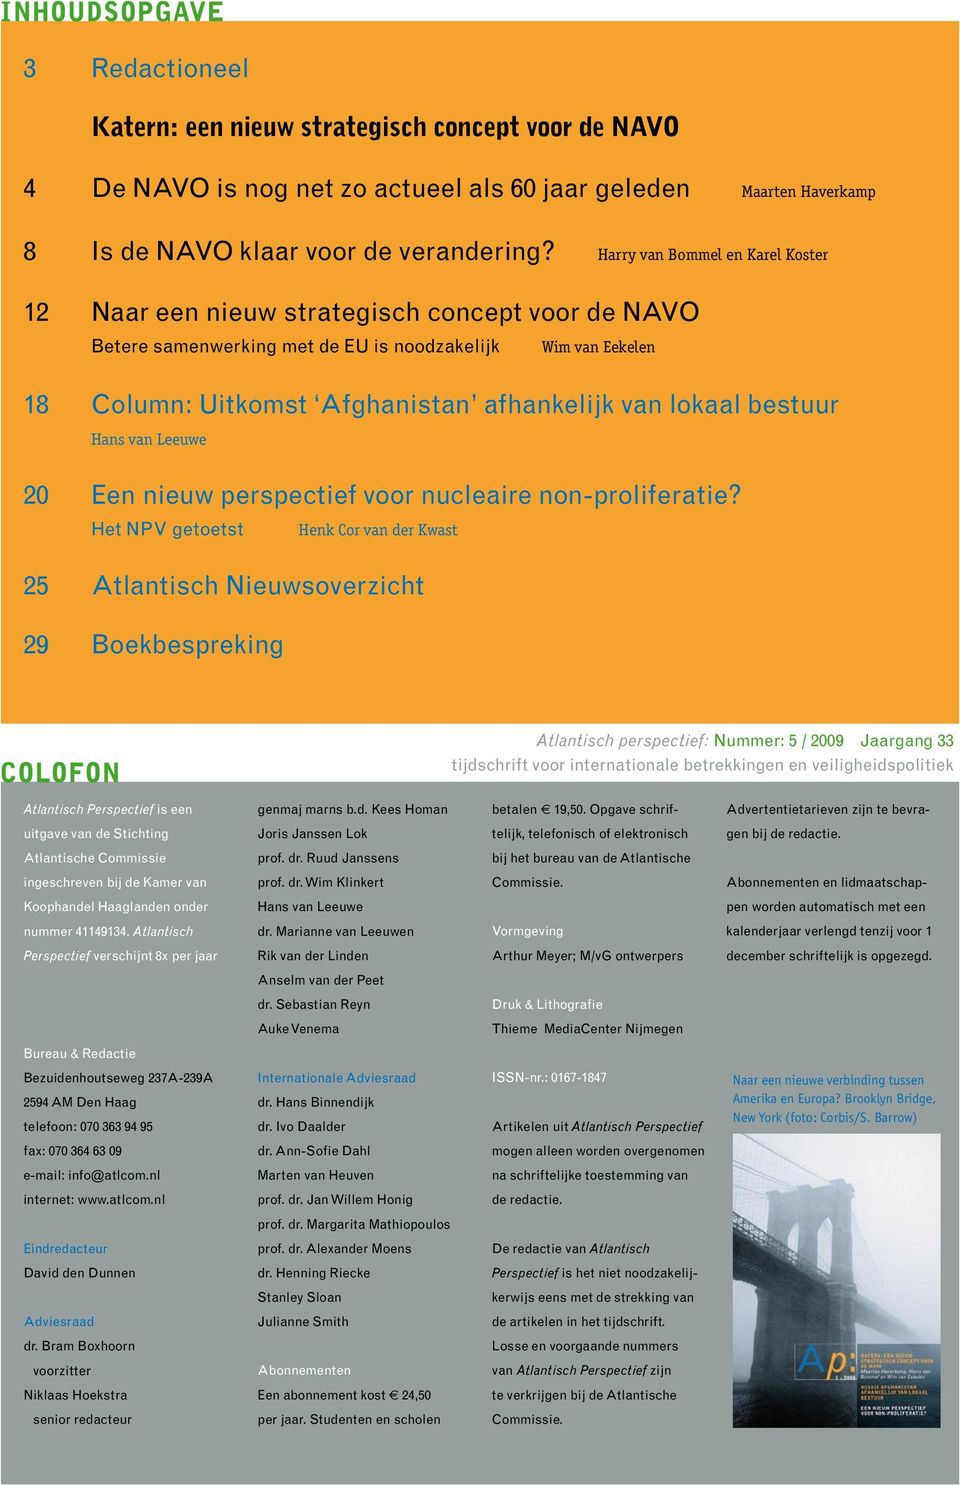 lokaal bestuur Hans van Leeuwe 20 Een nieuw perspectief voor nucleaire non-proliferatie?